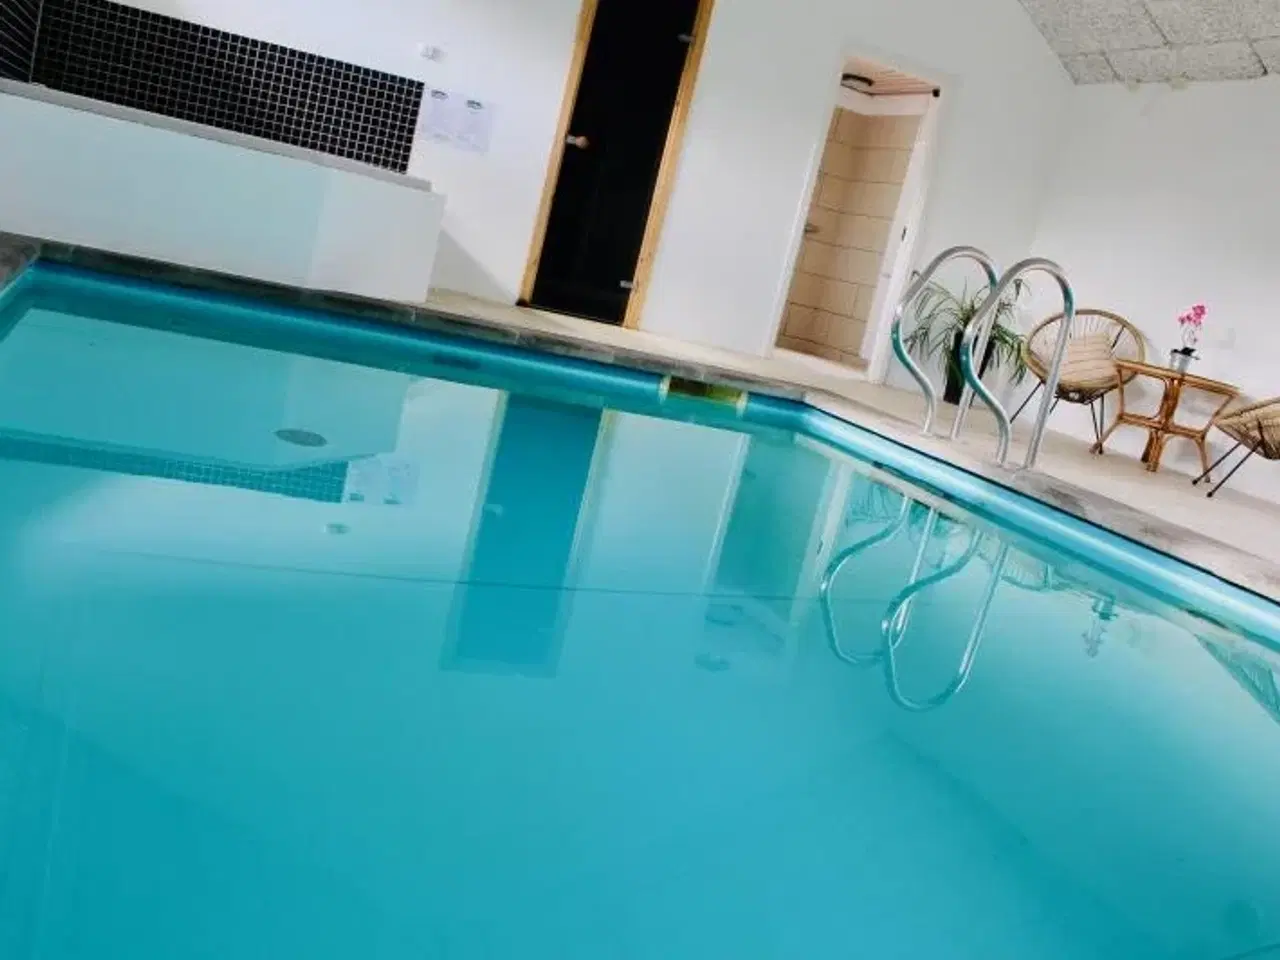 Billede 4 - Villa Grandissimo - Stort feriehus på 460 m2 med pool (30 personer)